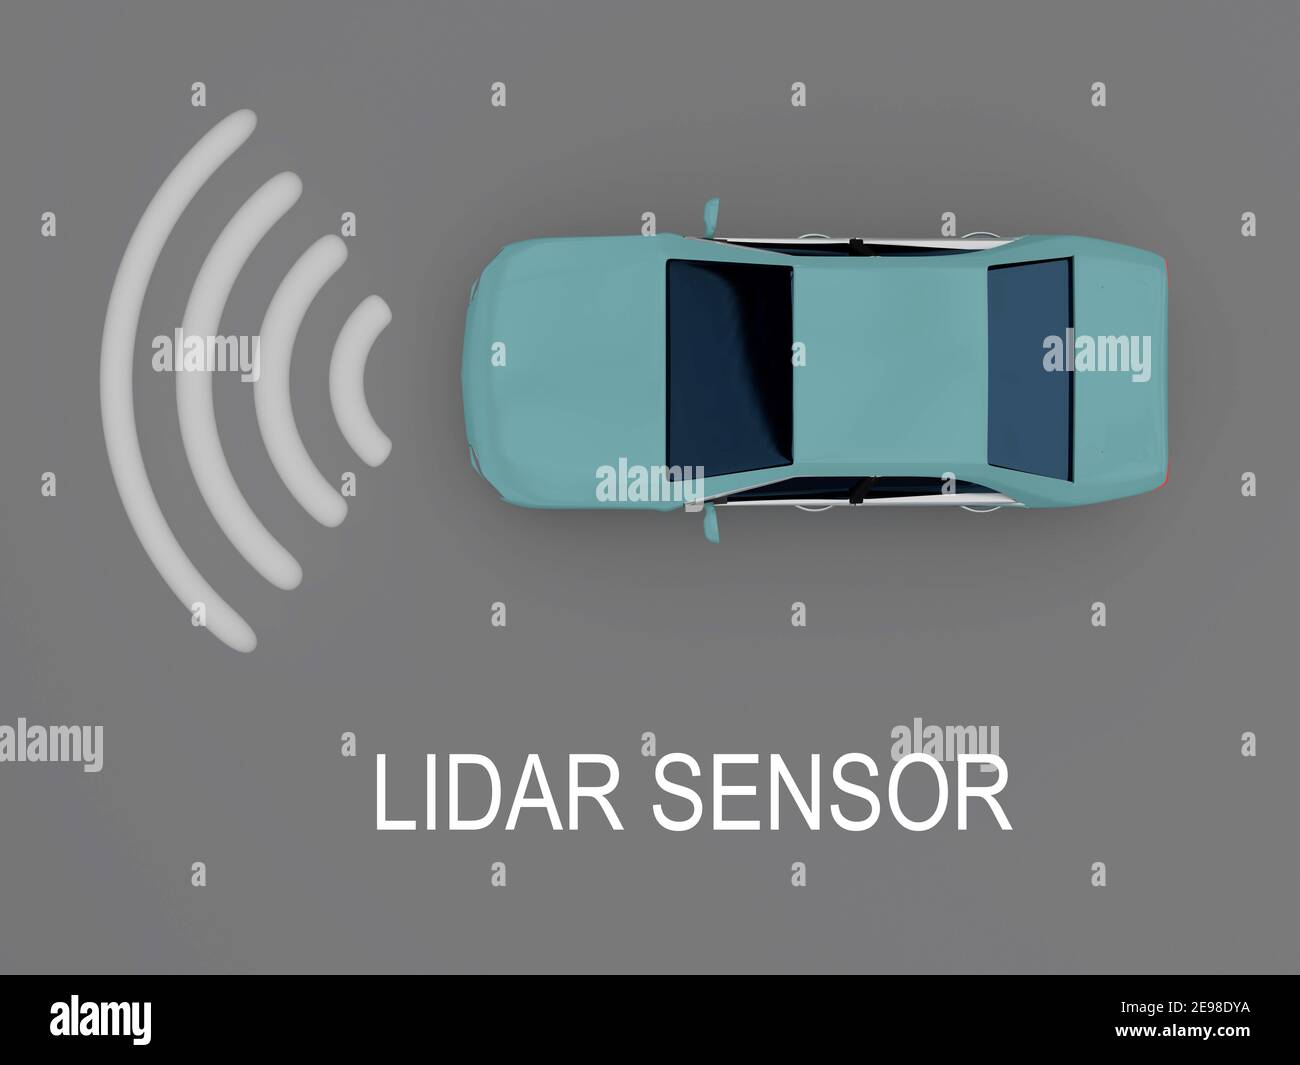 Ilustración 3D del título DEL SENSOR LIDAR bajo un coche autónomo con luz  láser simbólica, isolatet sobre carretera gris Fotografía de stock - Alamy